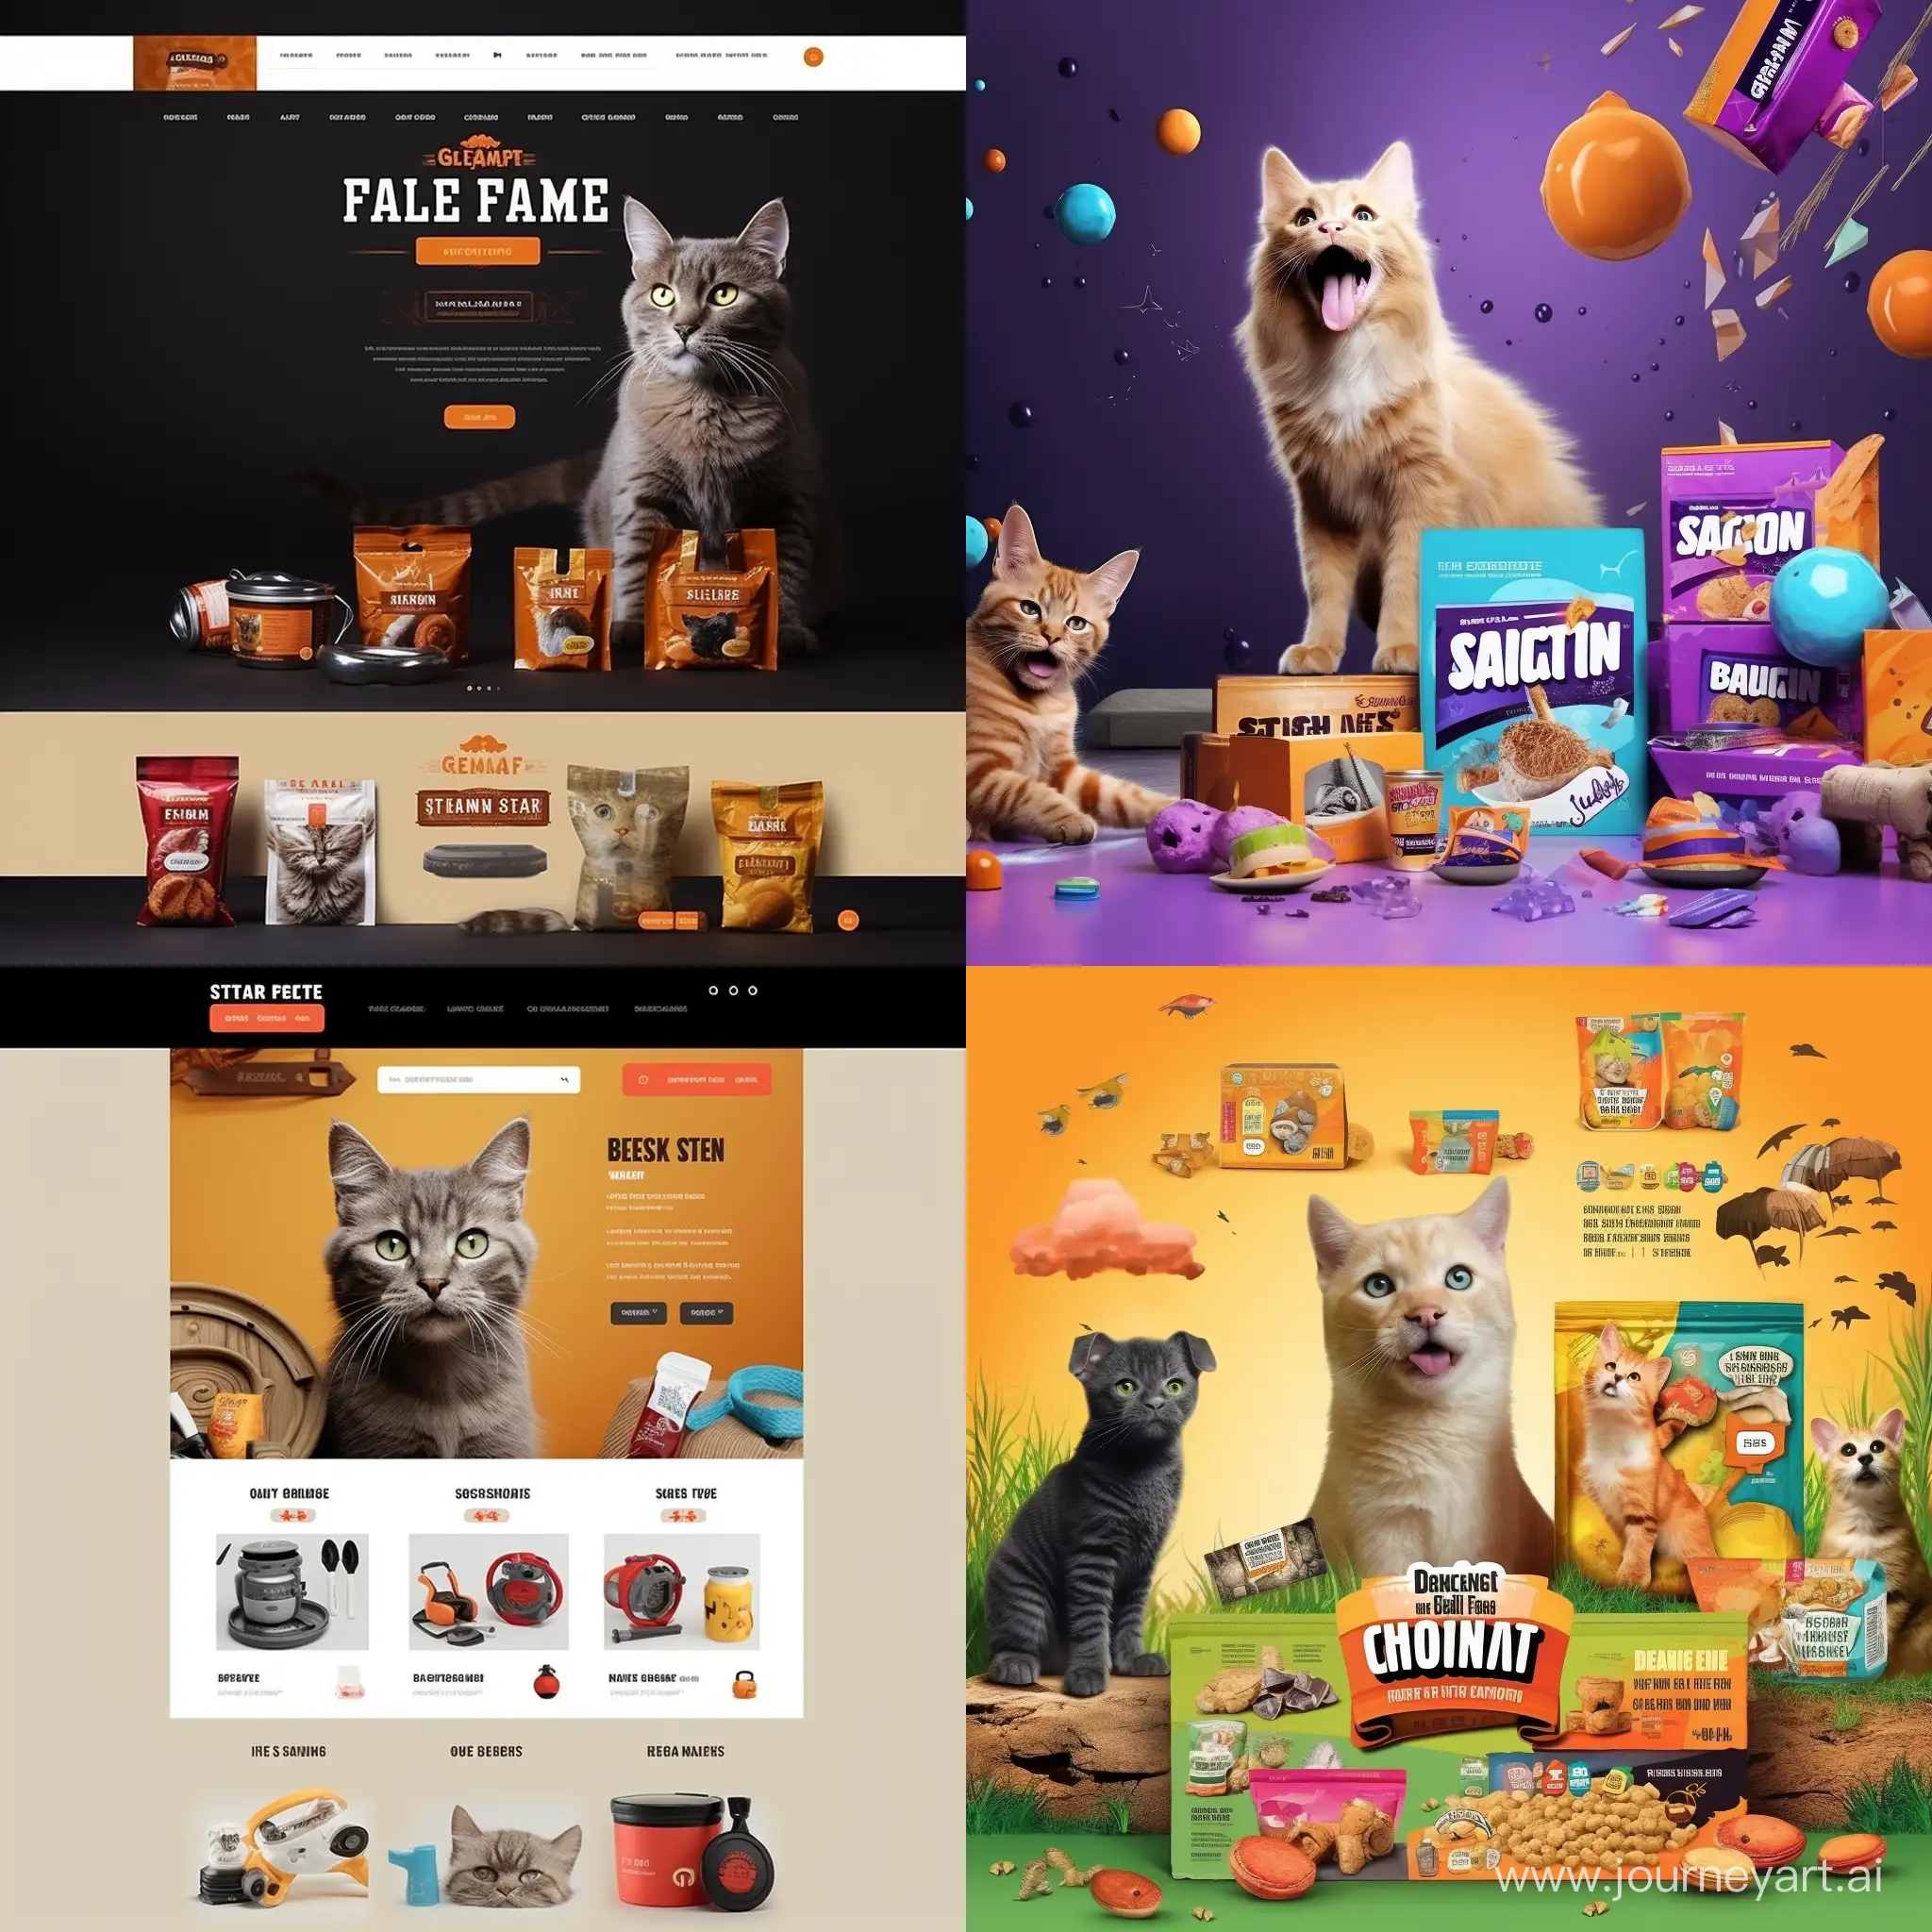 生成一个宠物用品电商网站的banner，大小是1060*535，图中有刺激消费的英文文字和吸引人购物的图像元素，宠物猫宠物狗的用品